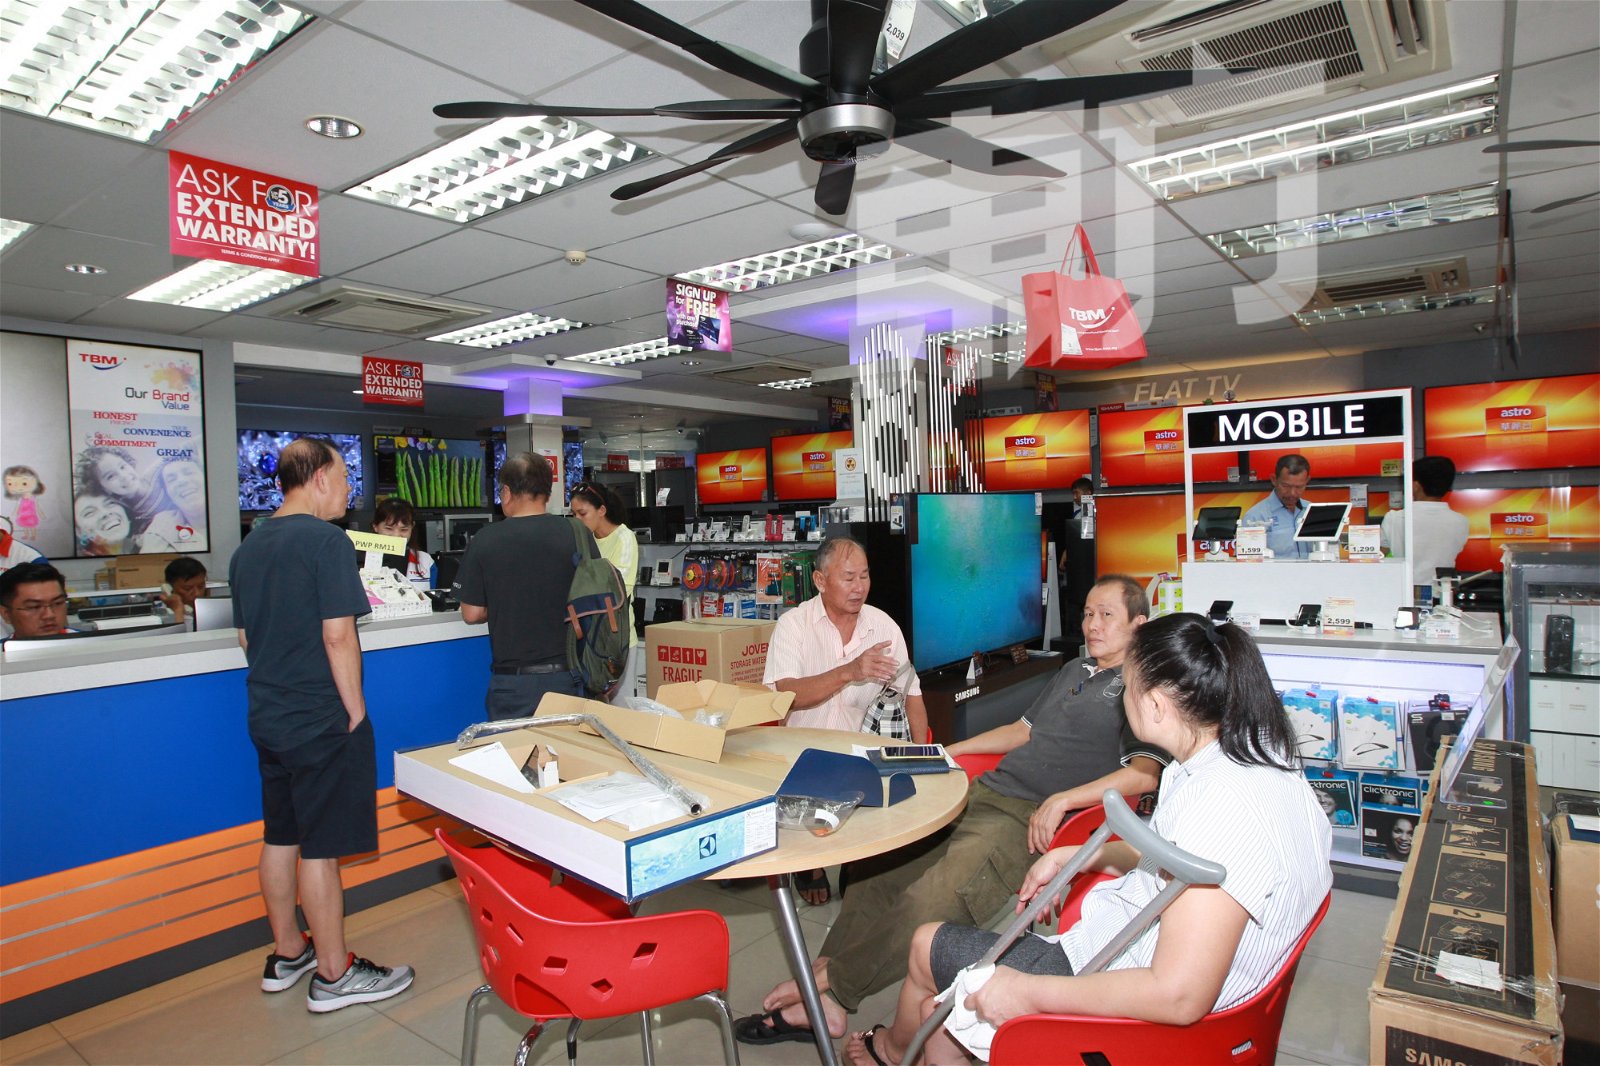 陈文明电器店建立起服务信誉，其社区电器店的地位延伸三代，不离不弃的忠实客户鼎力支持。